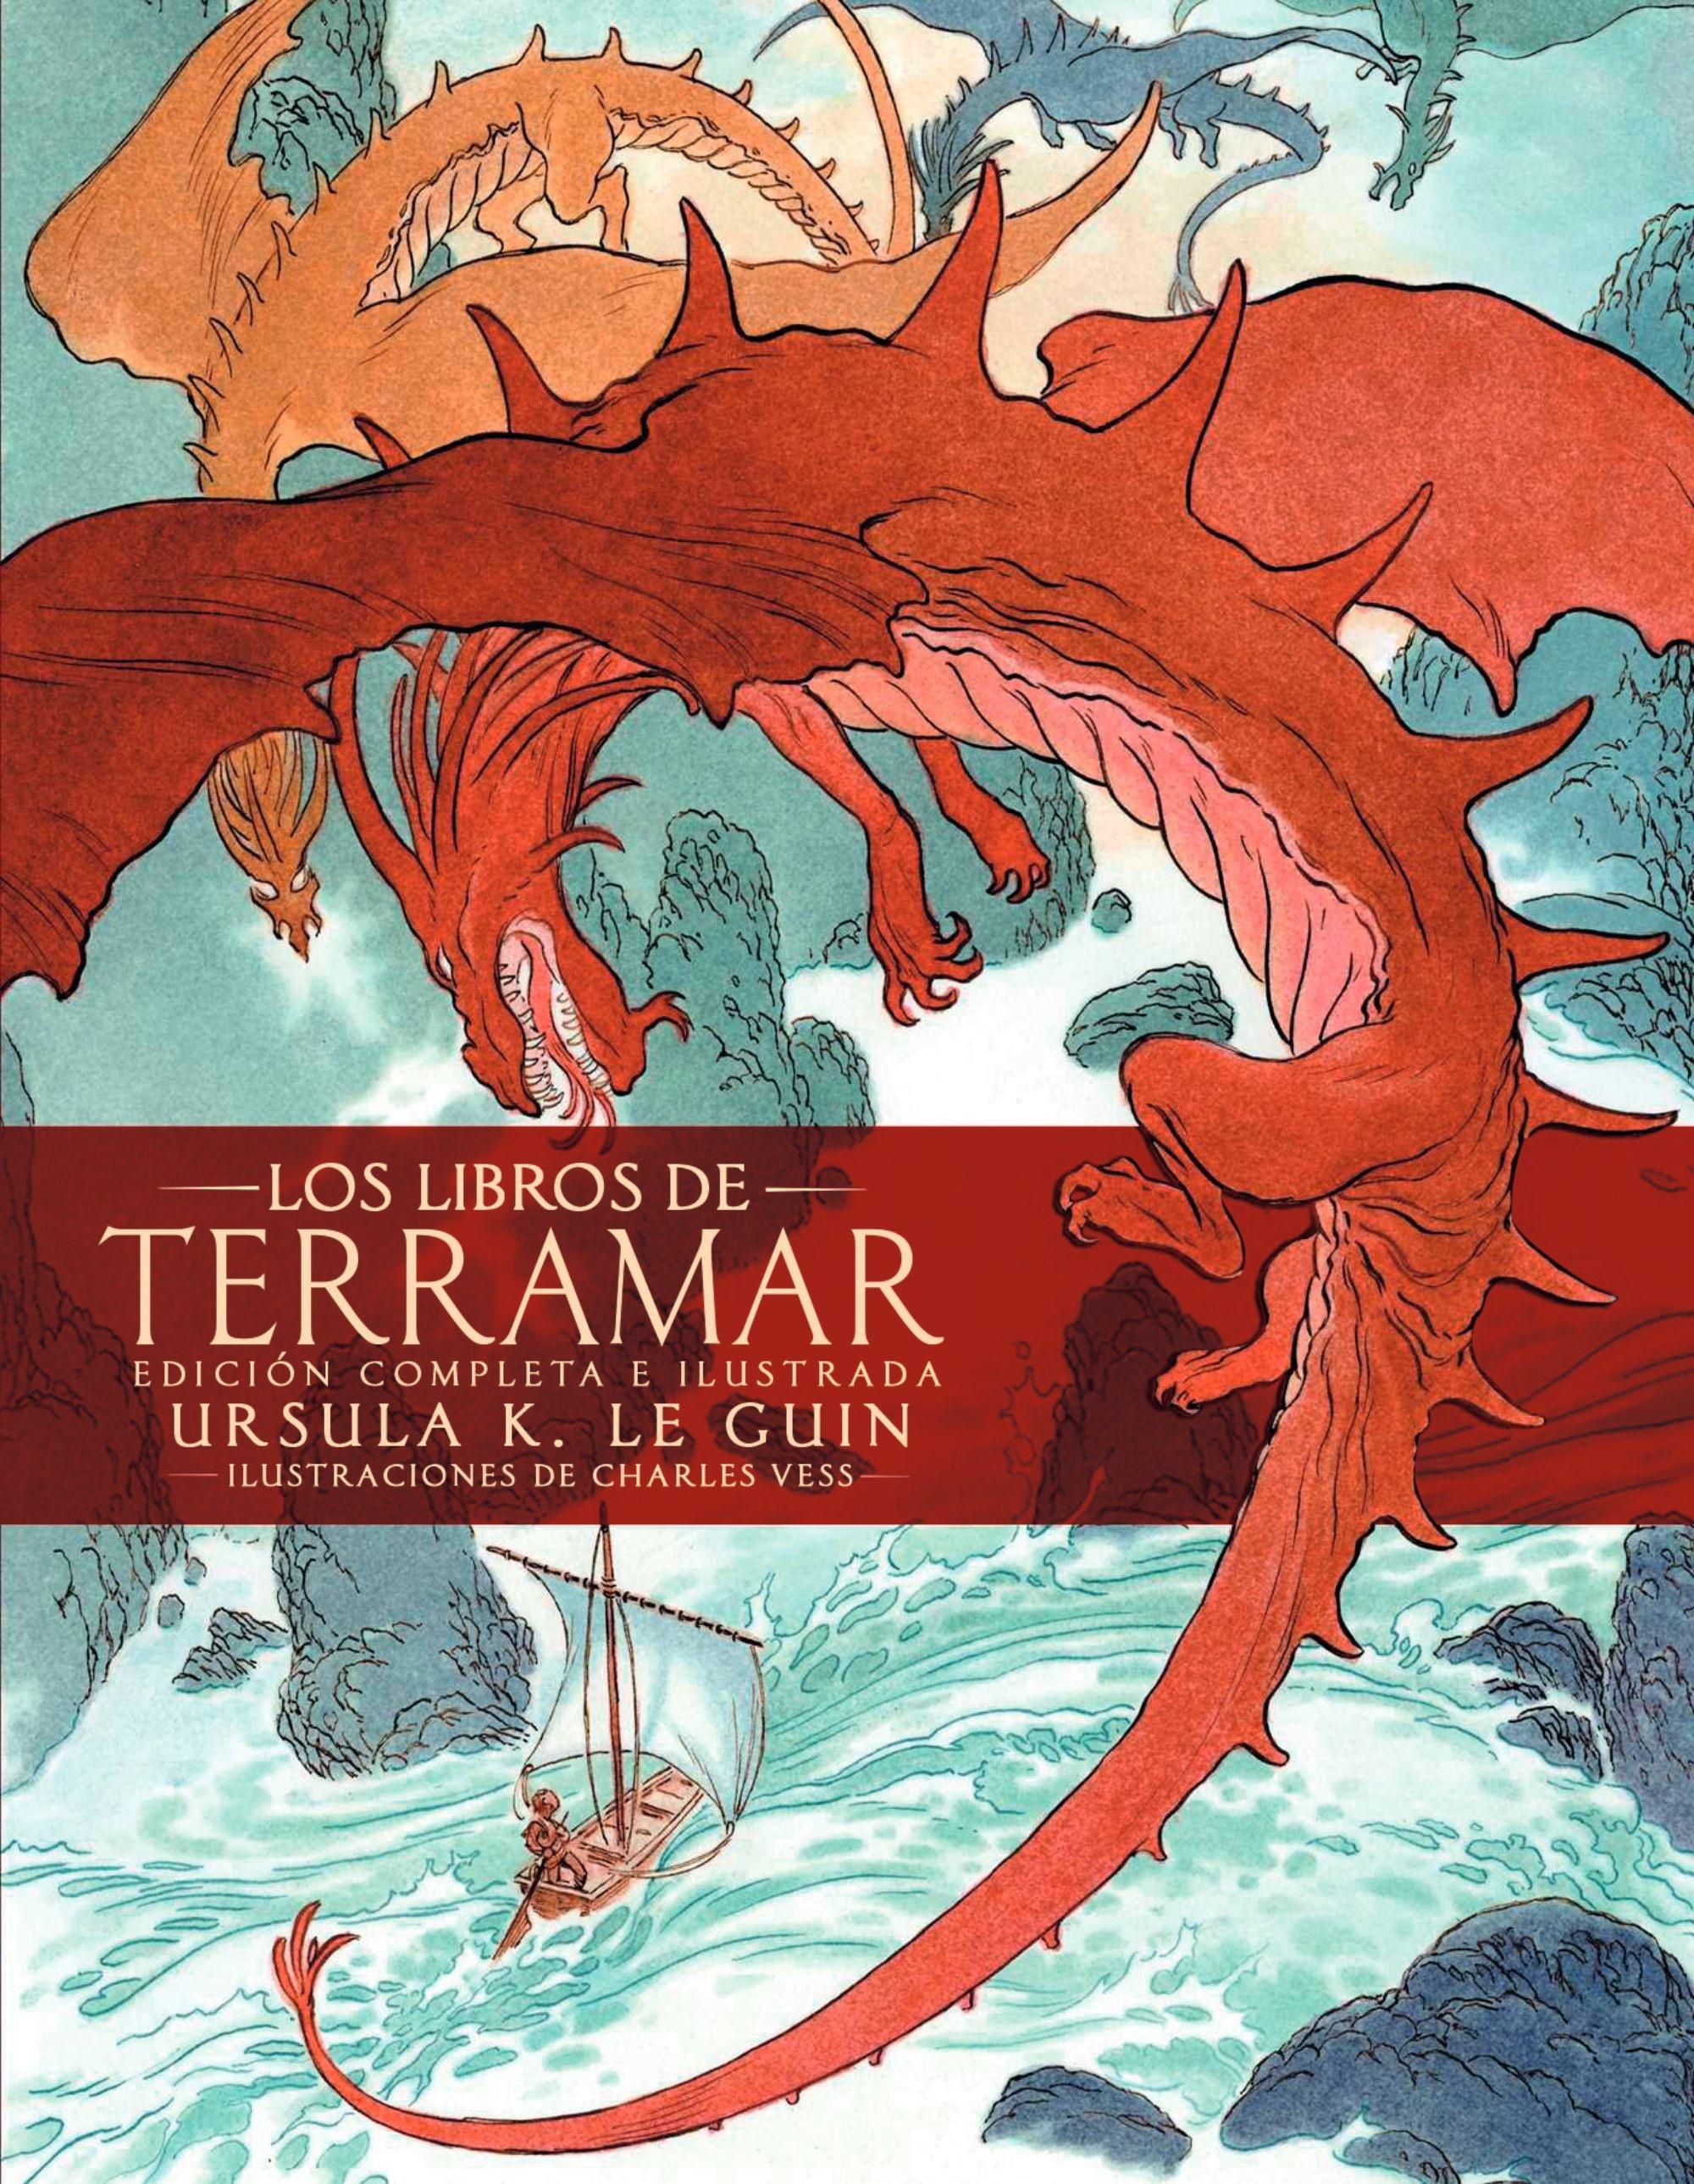 Libros de Terramar, Los "Edición completa ilustrada"